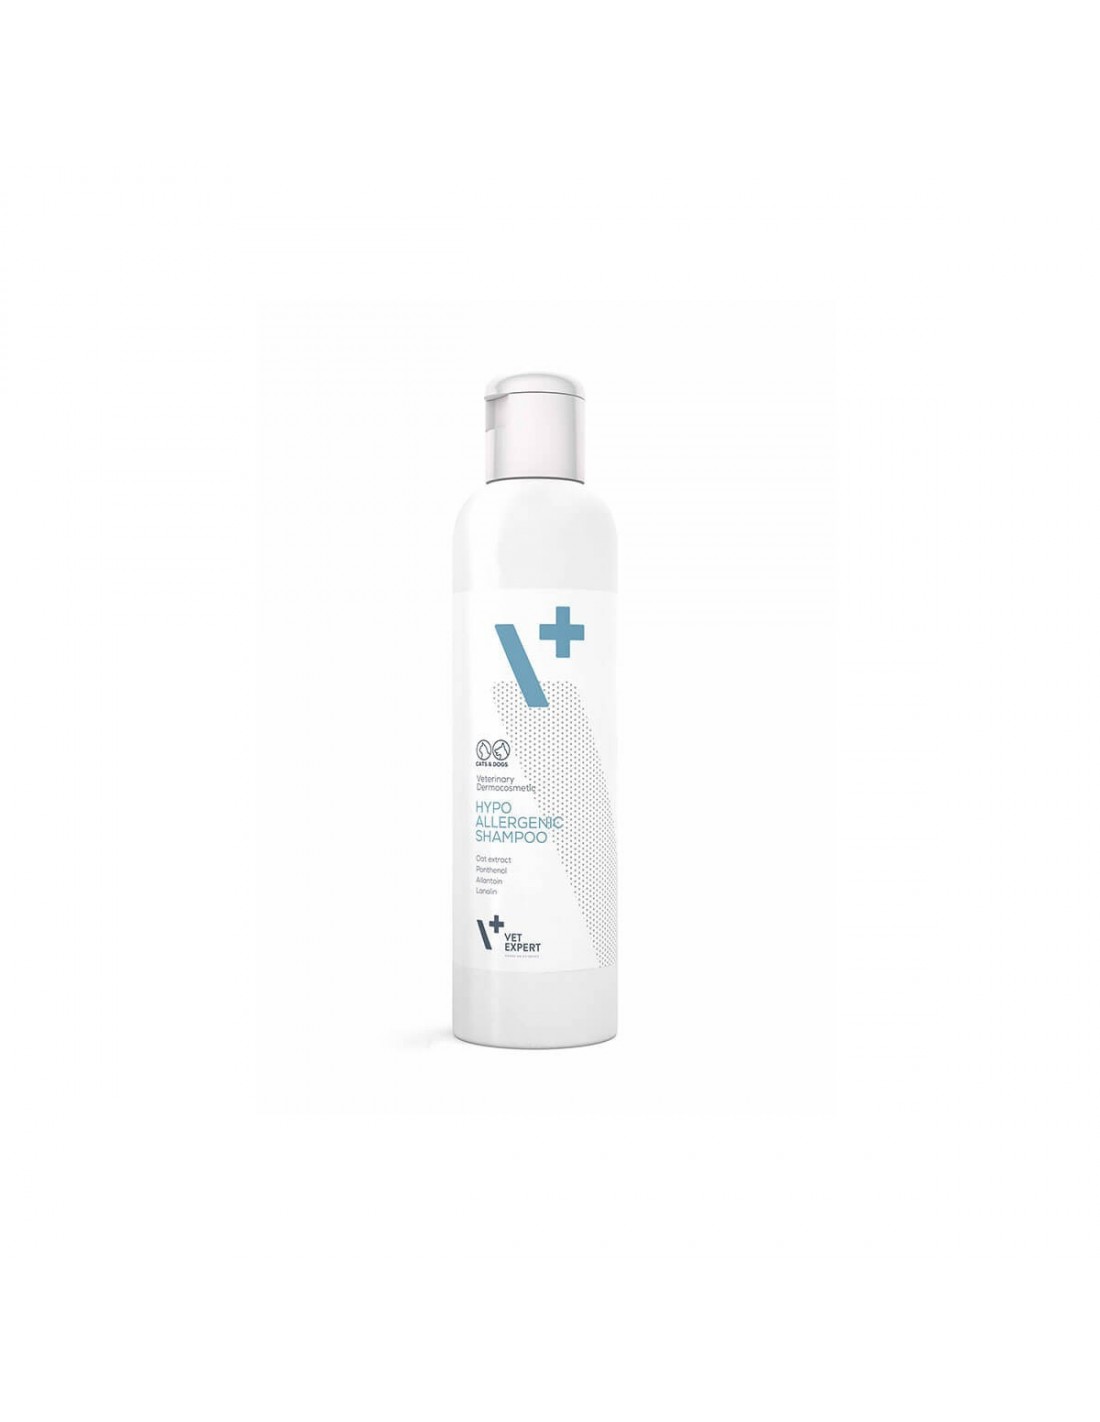 loréal paris serie expert volumetry szampon skład